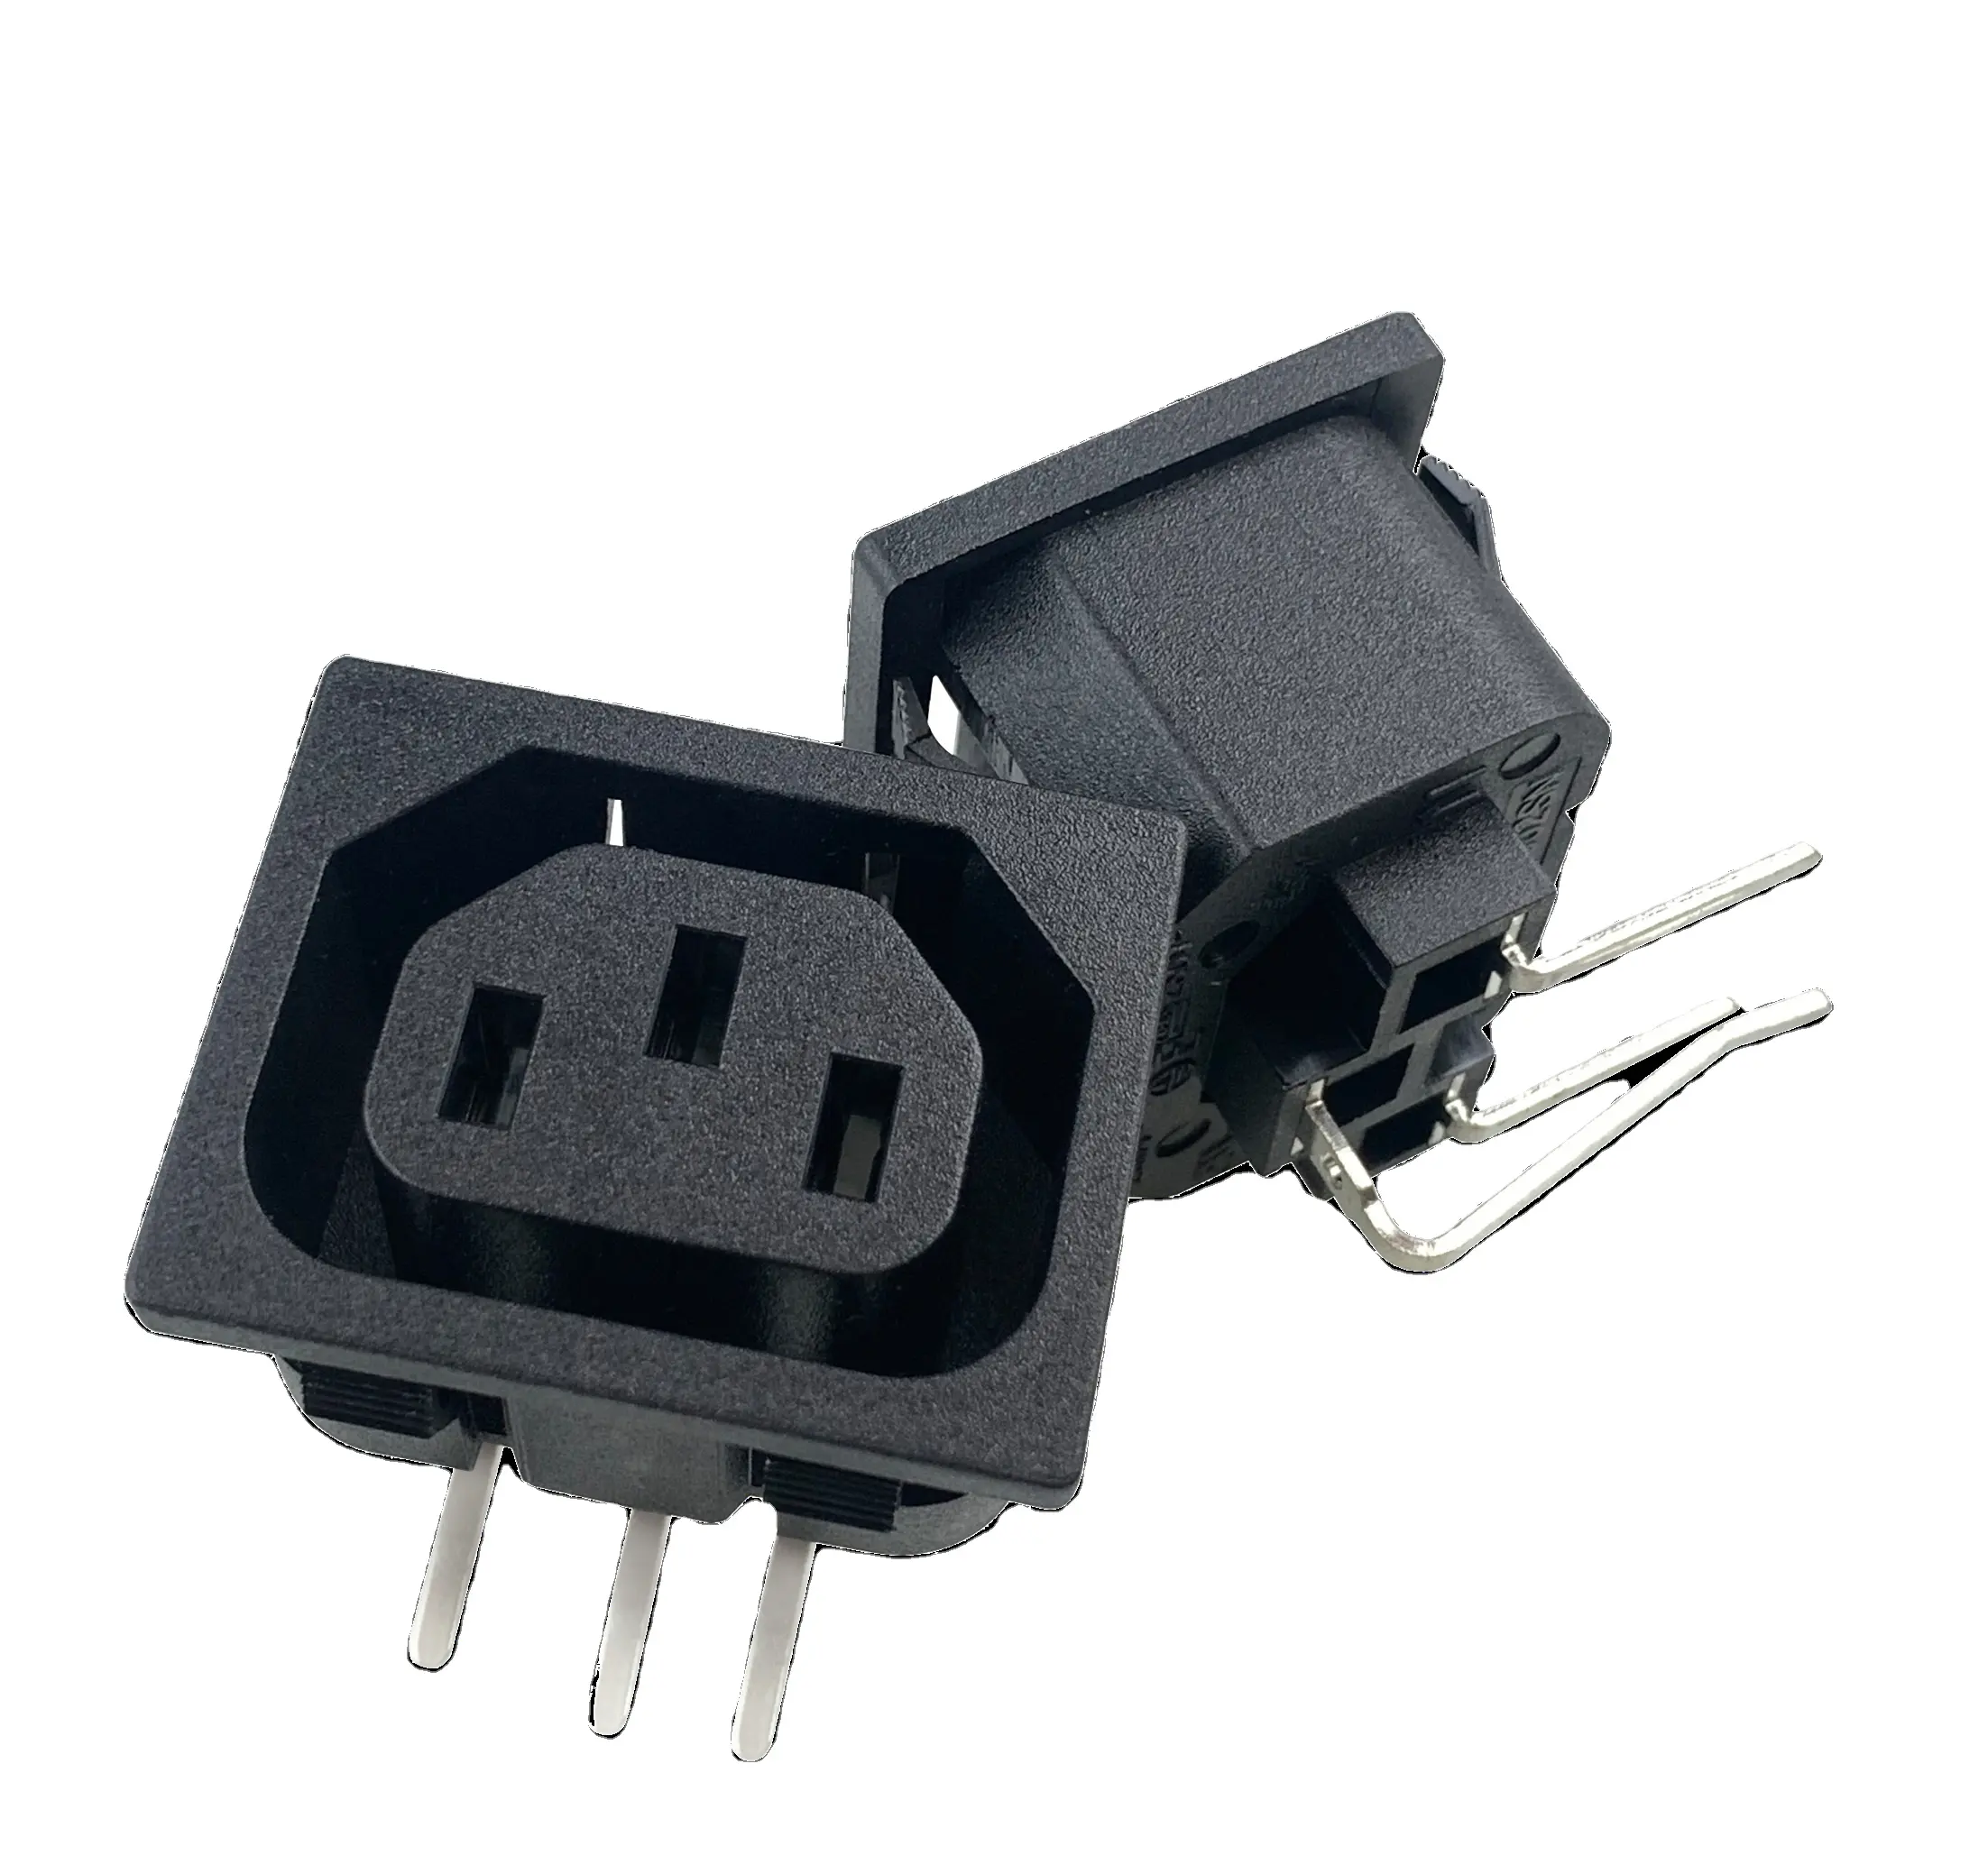 Chất lượng hàng đầu phổ tiêu chuẩn nối đất IEC 320 C13 Ổ cắm điện cắm ổ cắm để bán